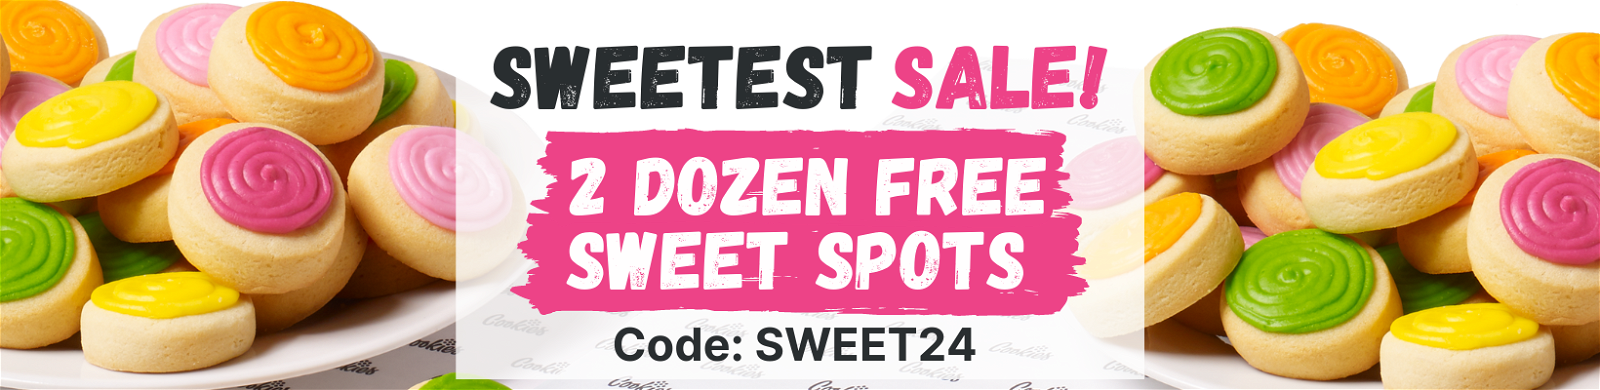 Sweetest Sale! 2 Dozen Free Sweet Spots